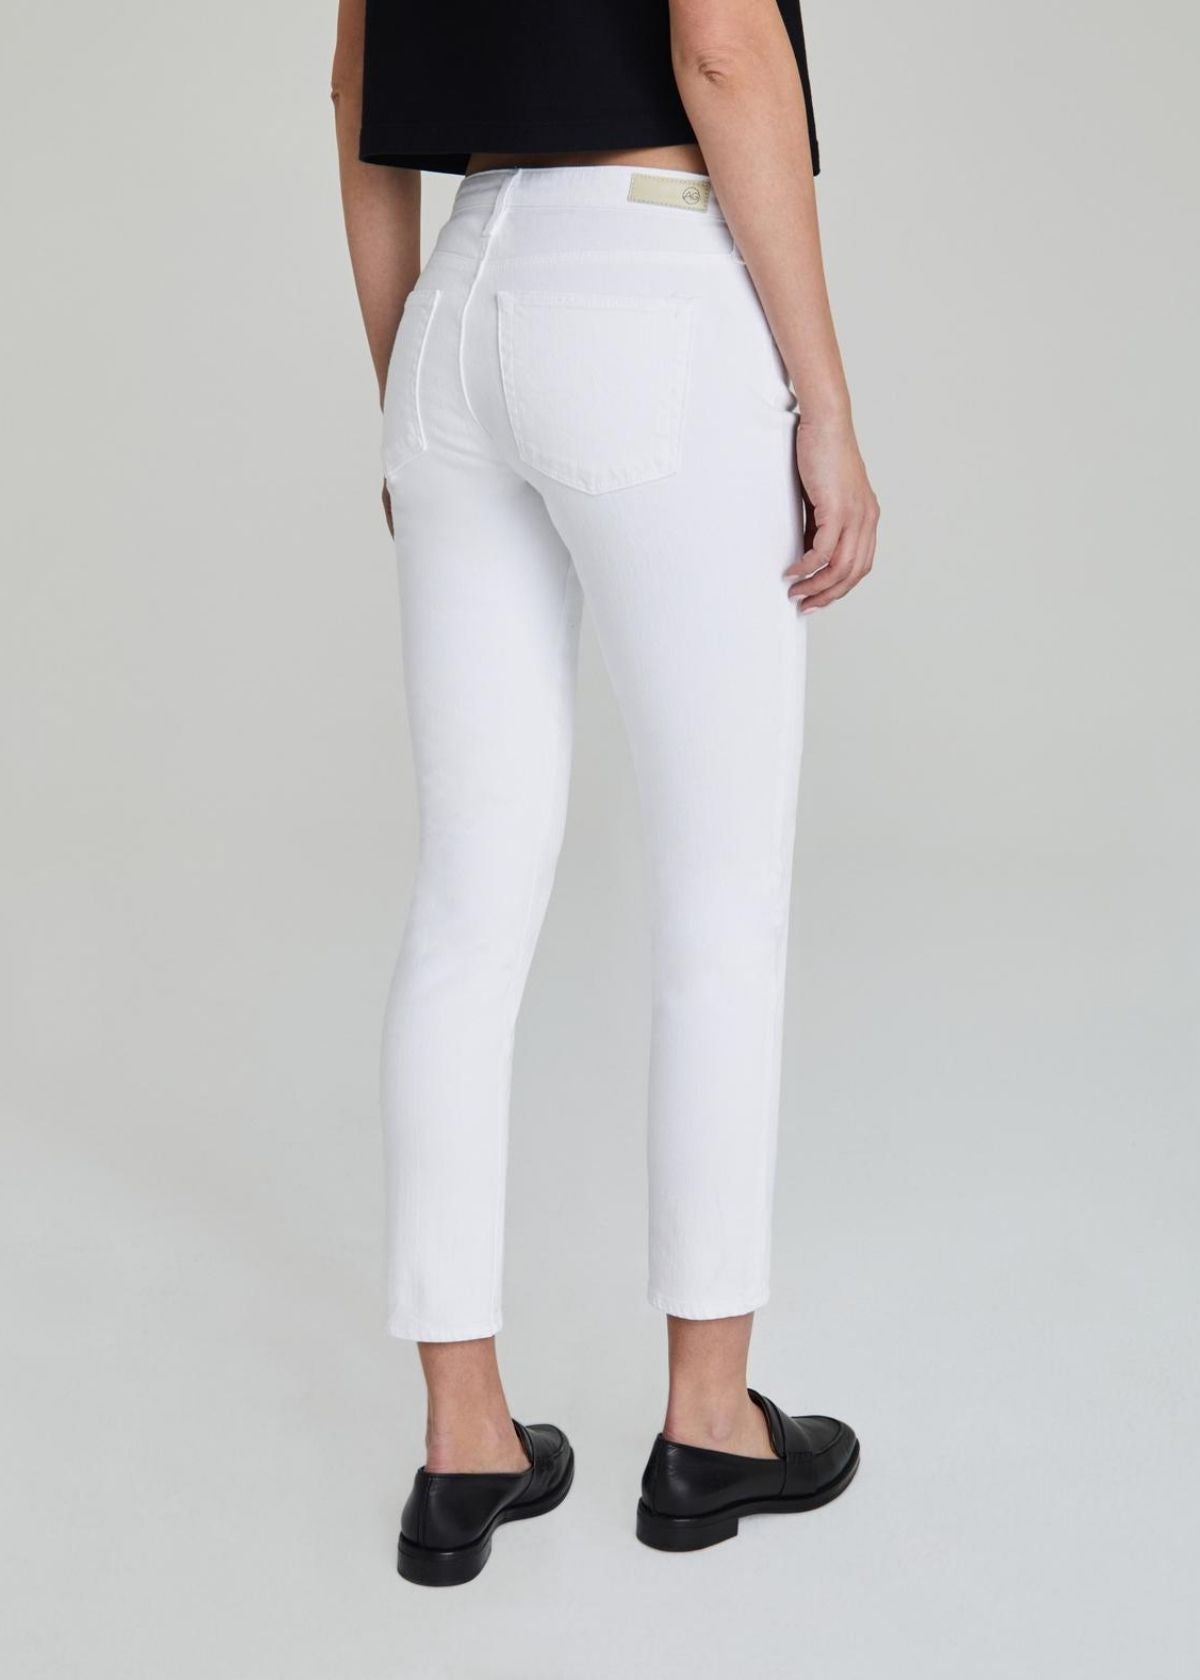 AG Prima Ankle Jean in White